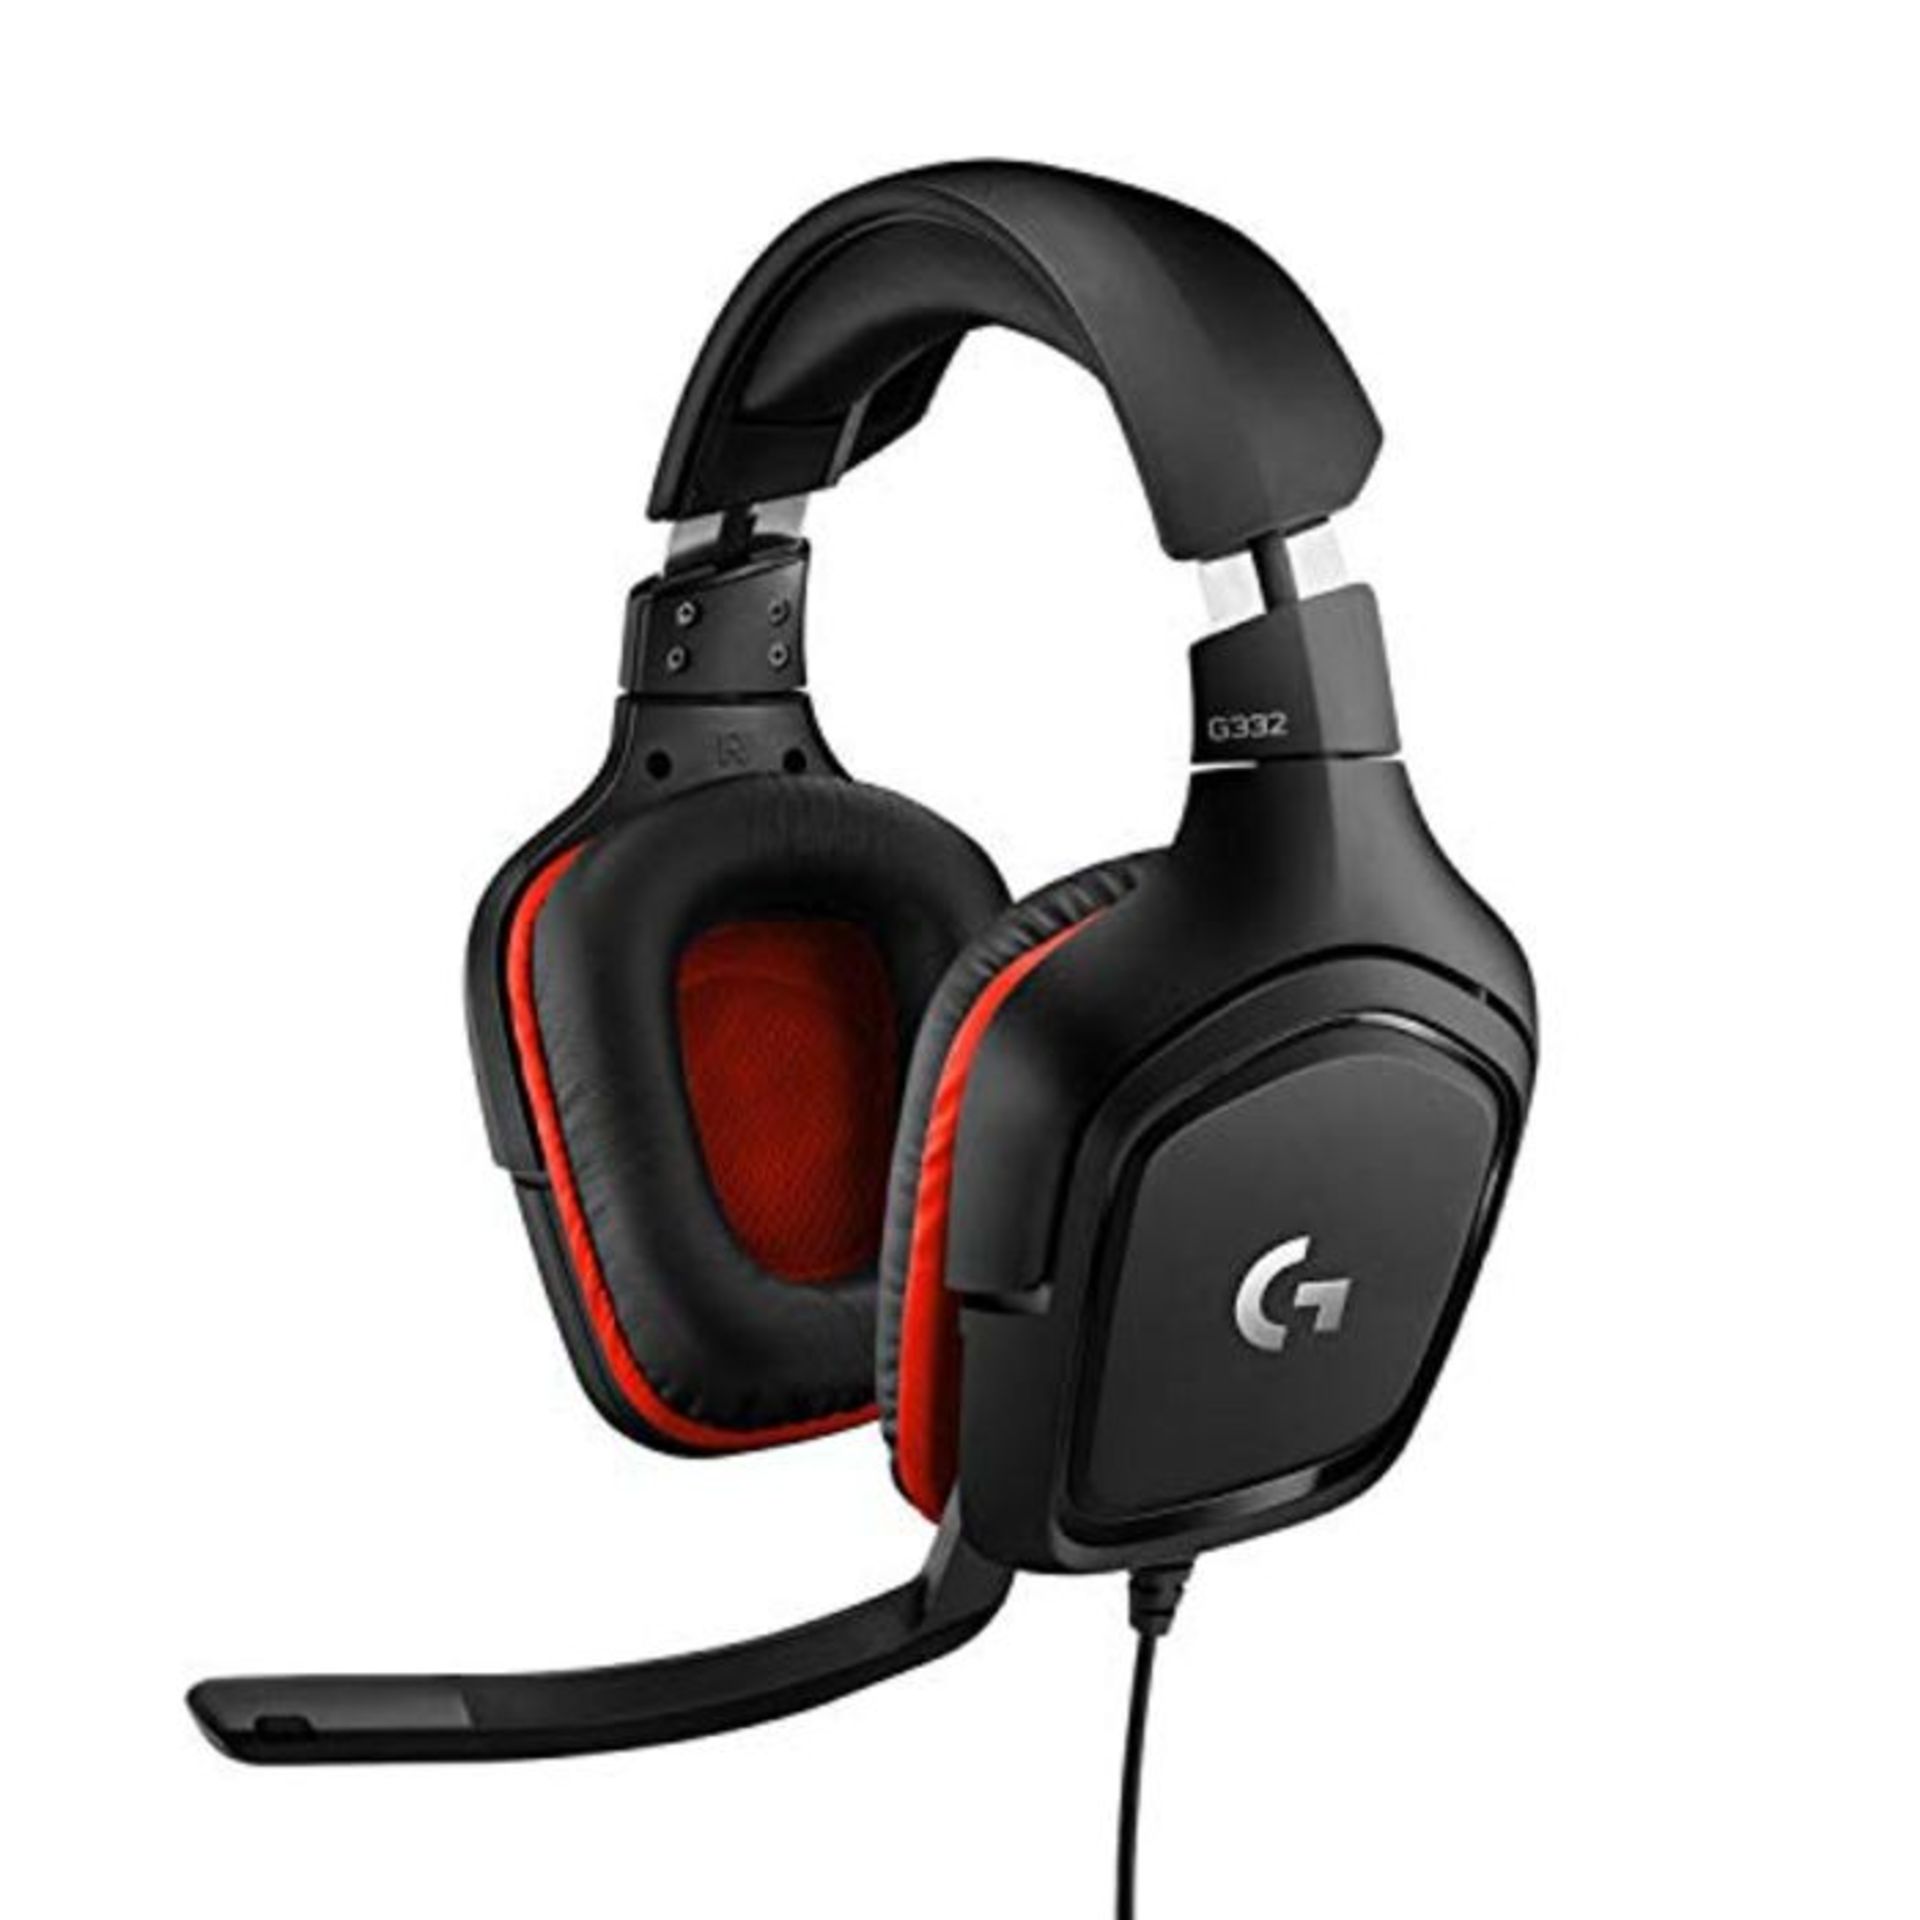 Logitech G332 kabelgebundenes Gaming-Headset, 50mm Treiber, Rotierende Kunstleder-Ohrm